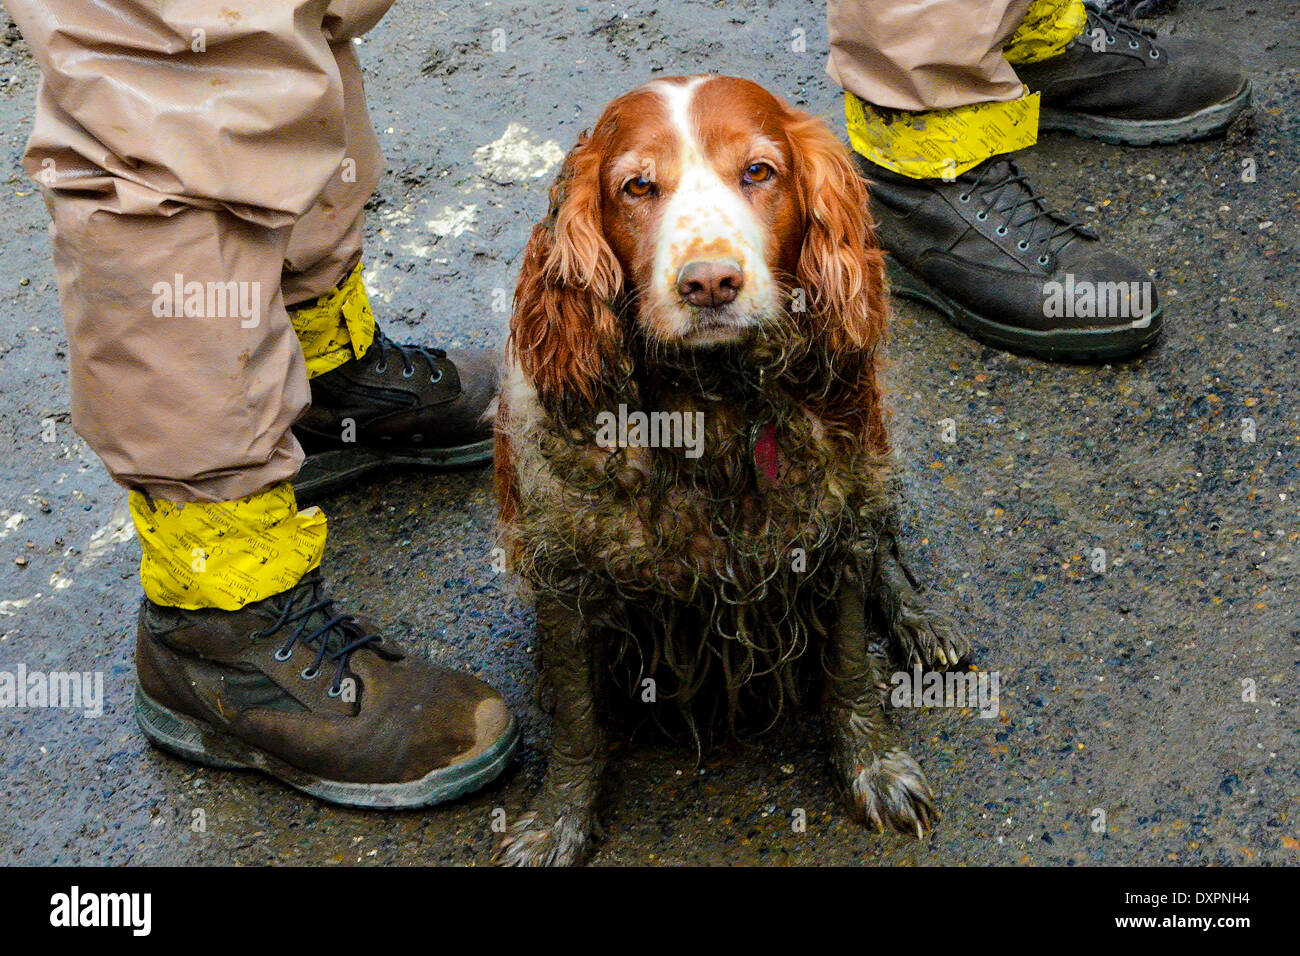 OSO, Washington, USA. 28. März 2014. Suche und Rettung Hund wartet  gewaschen werden, nach der Arbeit im Schlamm Opfer eines massiven  Erdrutsches zu suchen, die mindestens 28 Menschen getötet und vernichtet ein